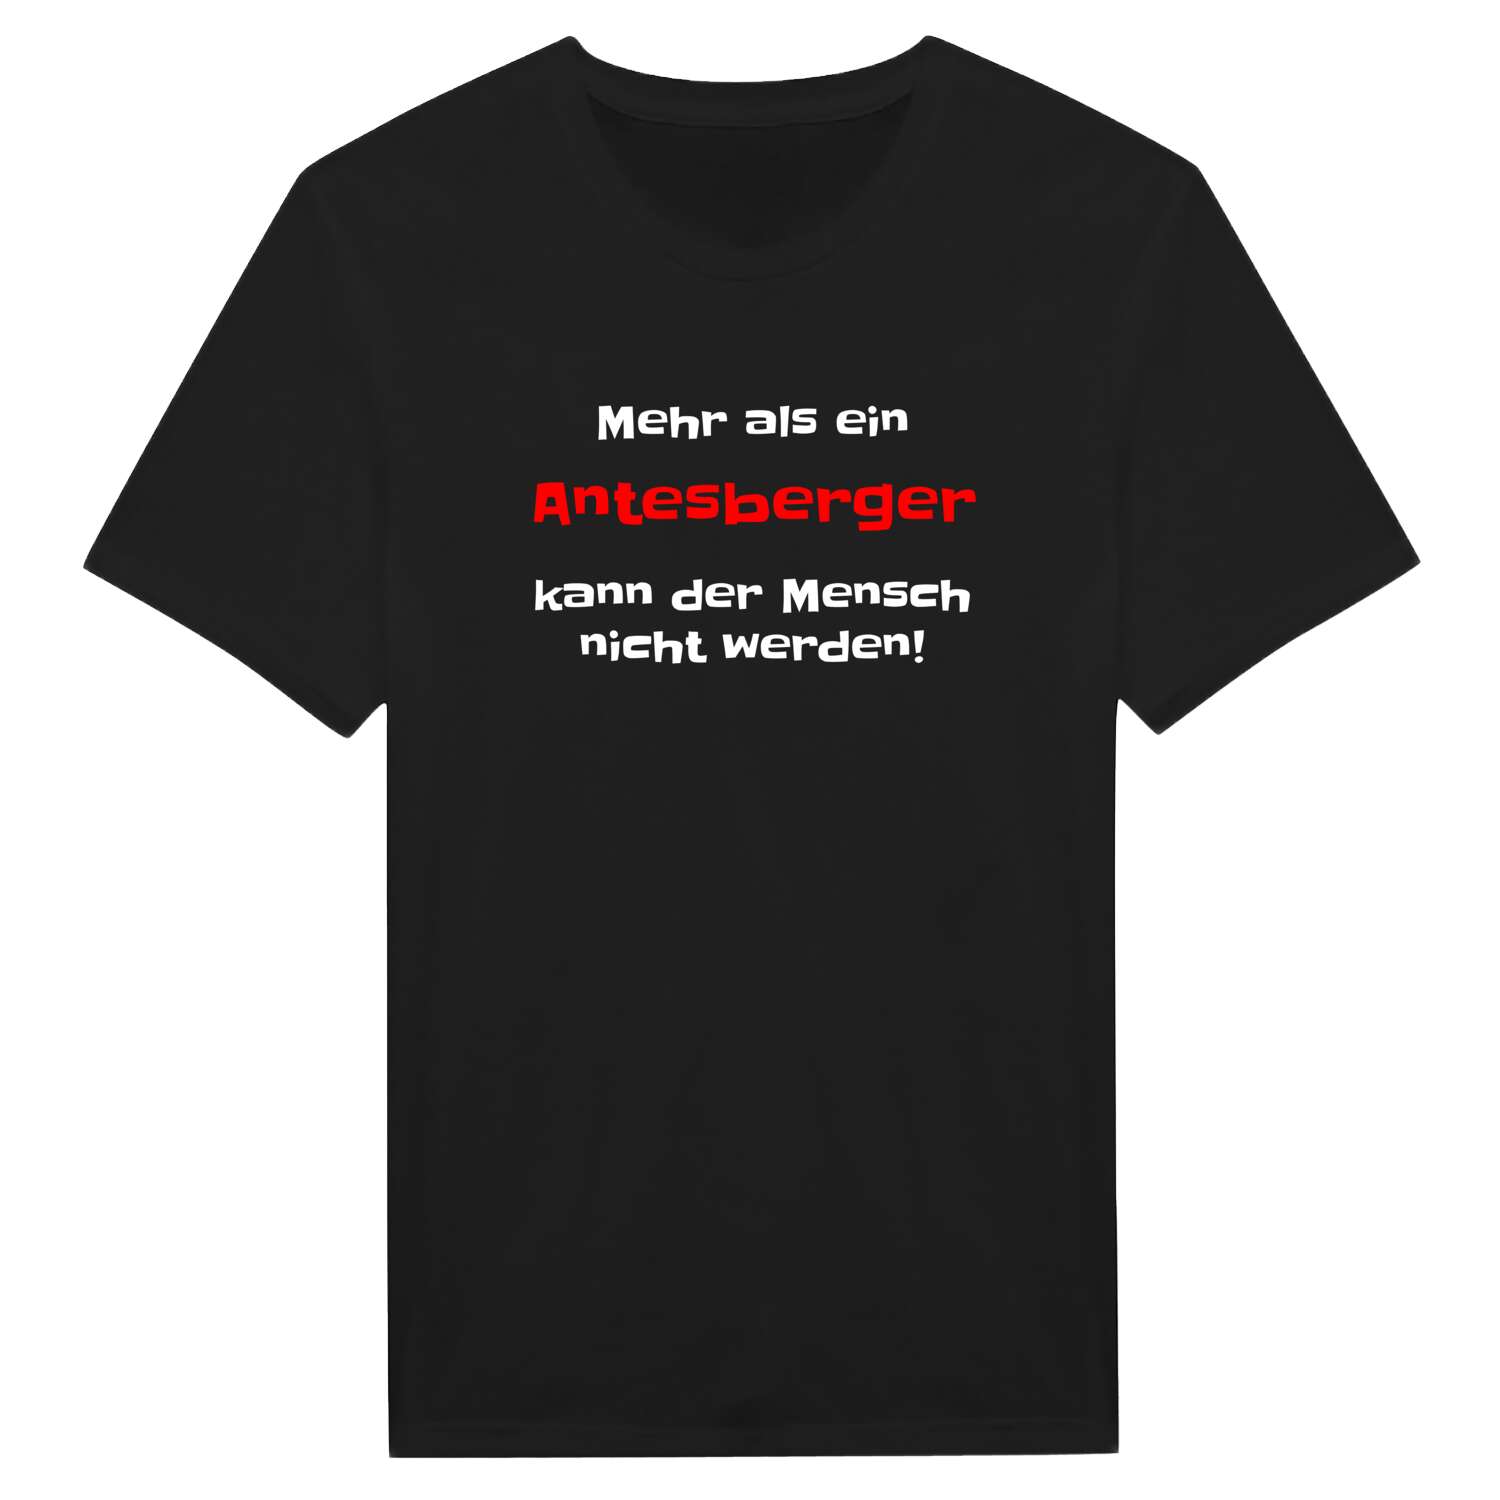 Antesberg T-Shirt »Mehr als ein«